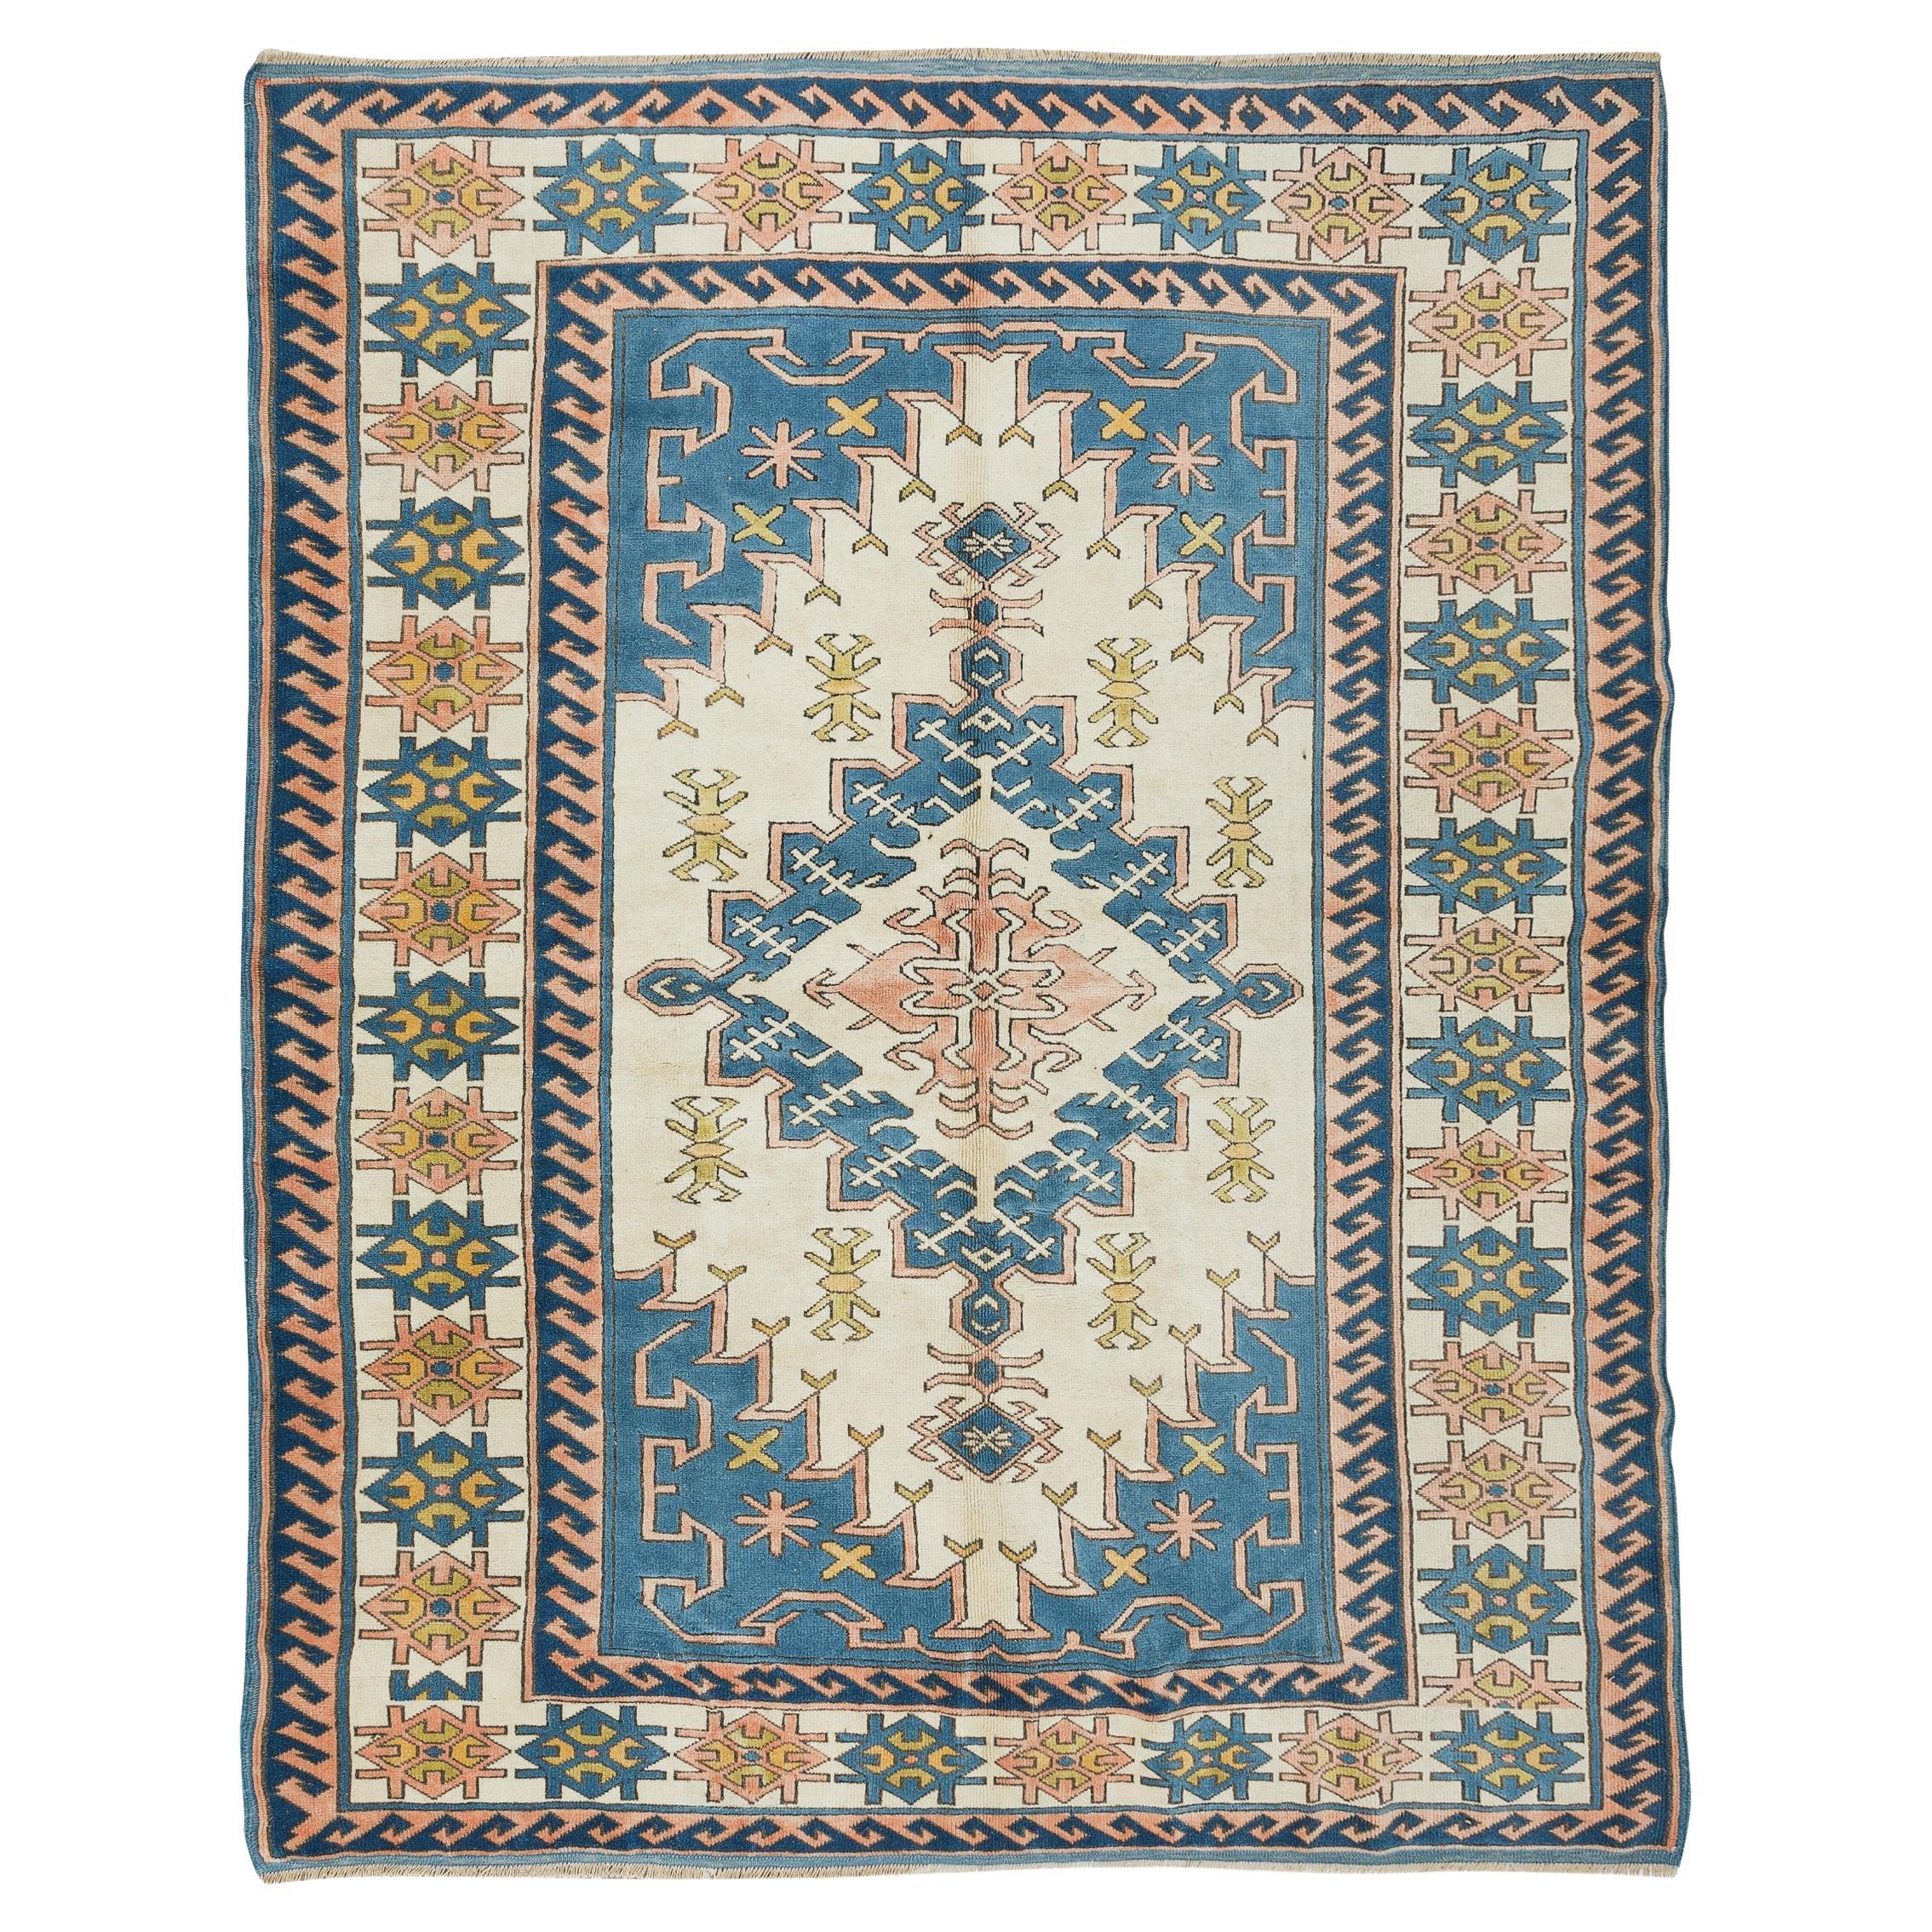 6.9x8.8 Ft Handmade Area Rug, Modern Turkish Carpet for Living Room Decor